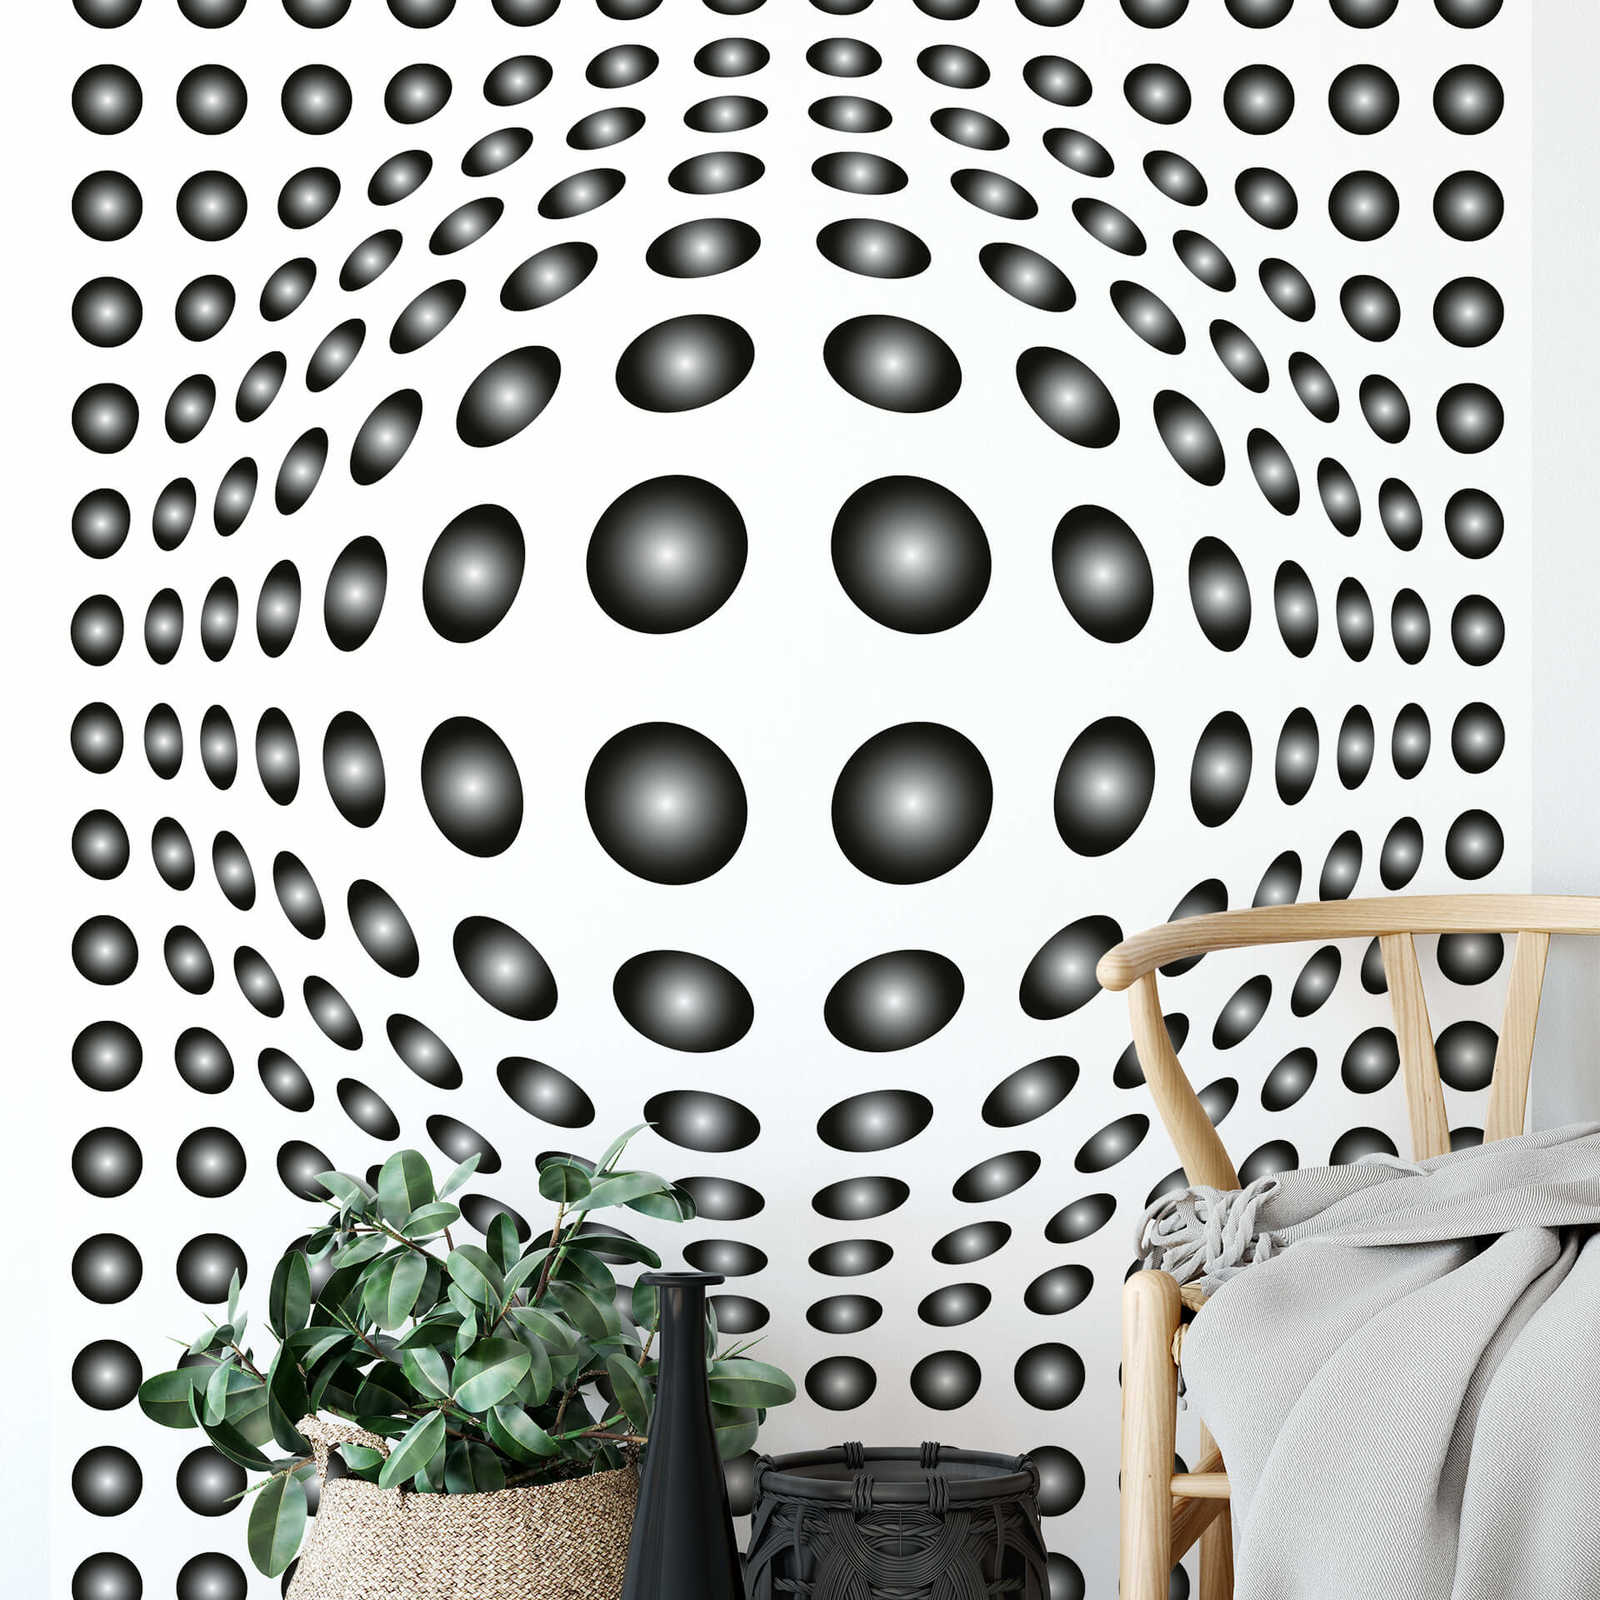             Zwart-wit fotobehang met 3D-stippenpatroon, staand formaat
        